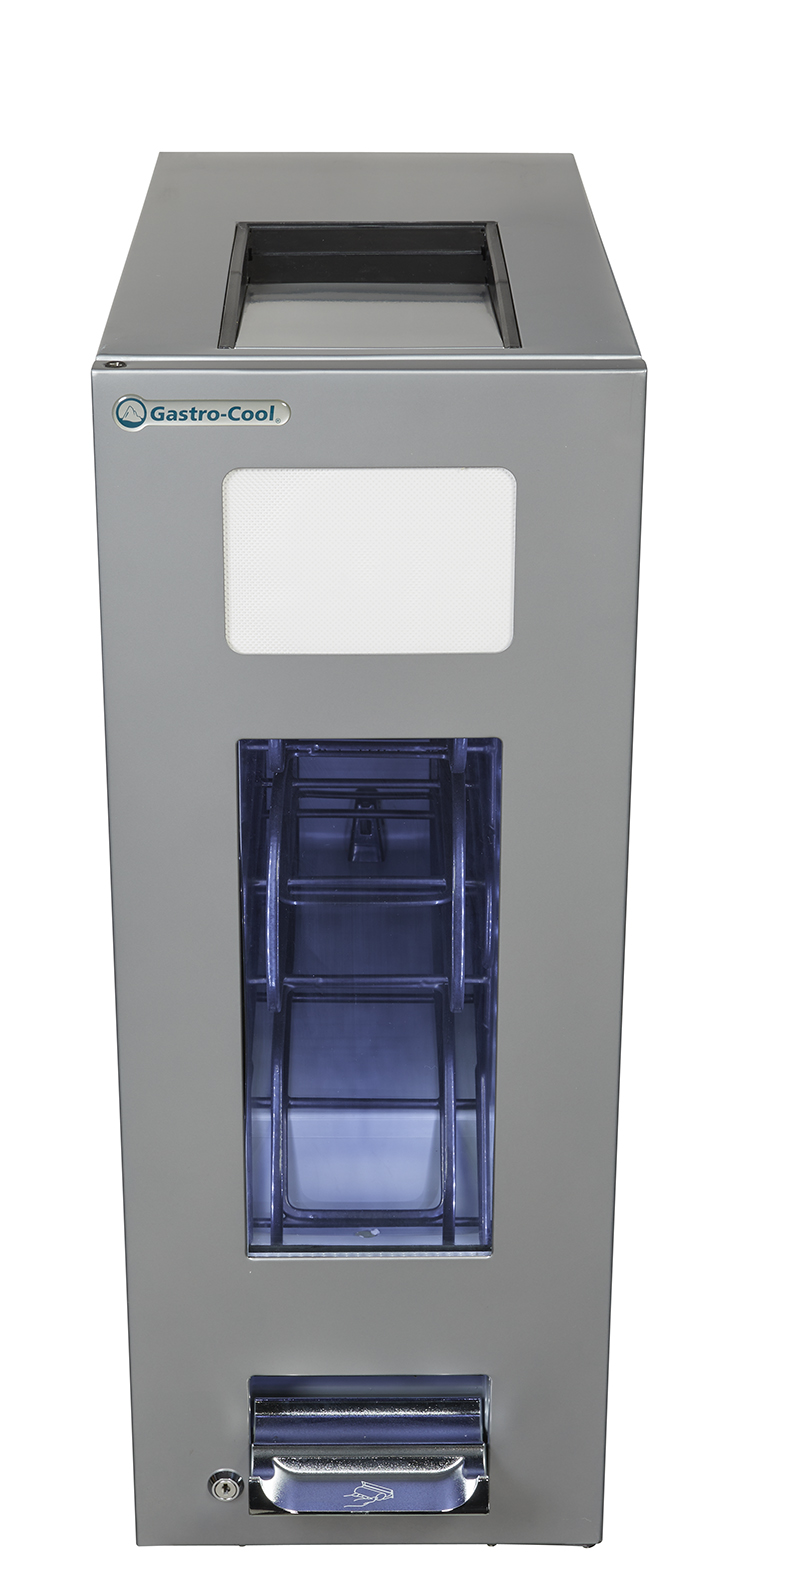 Gastro-Cool - Dosen Dispenser Kühlschrank - Silber - 250 ml slim can - GCAP50-250 - Voransicht leer